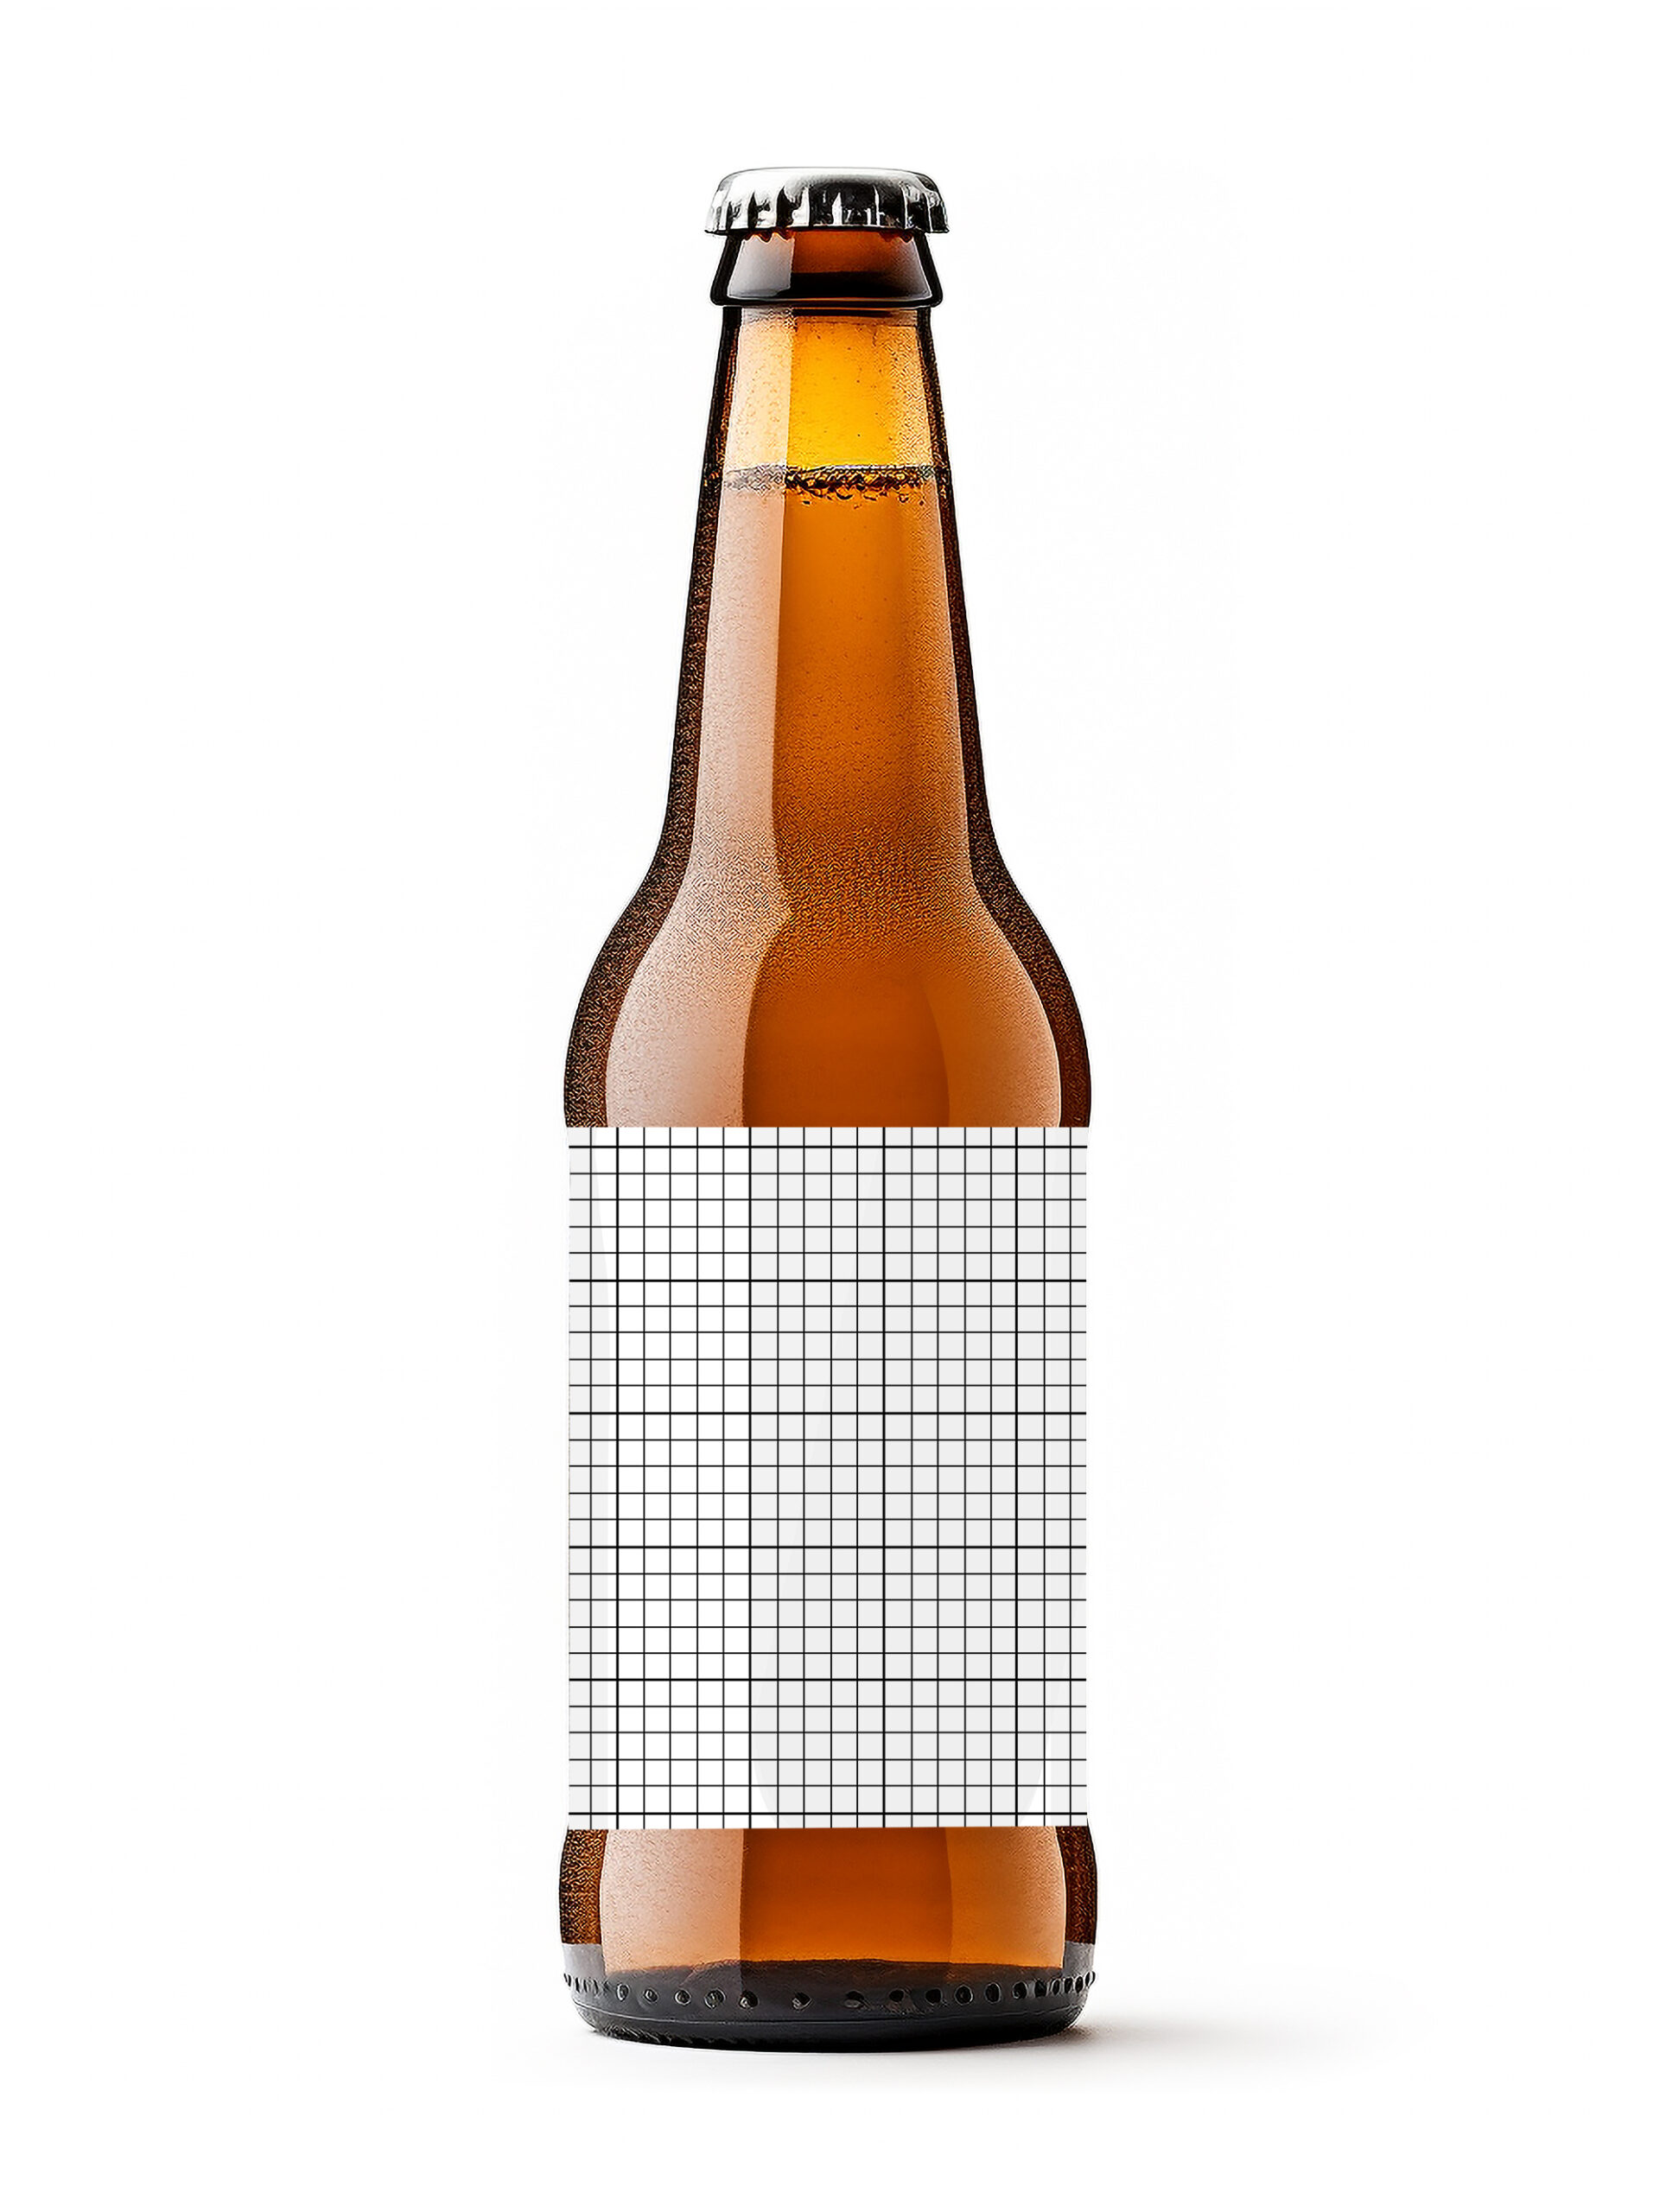 Beer bottle template